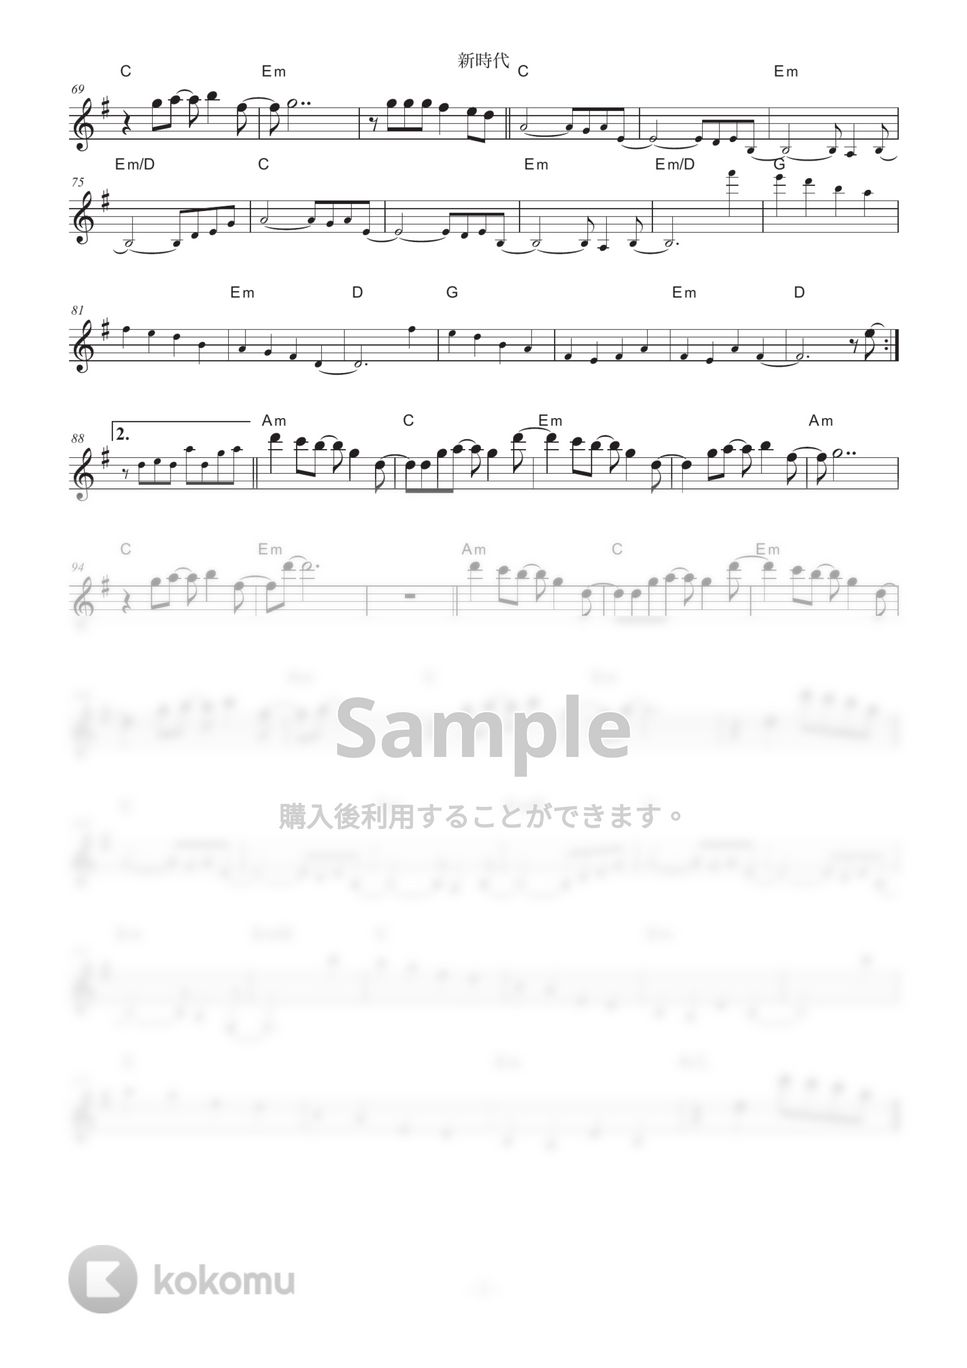 中田ヤスタカ - 新時代 (バイオリンなどのメロディ楽器演奏用楽譜) by Soundsberry